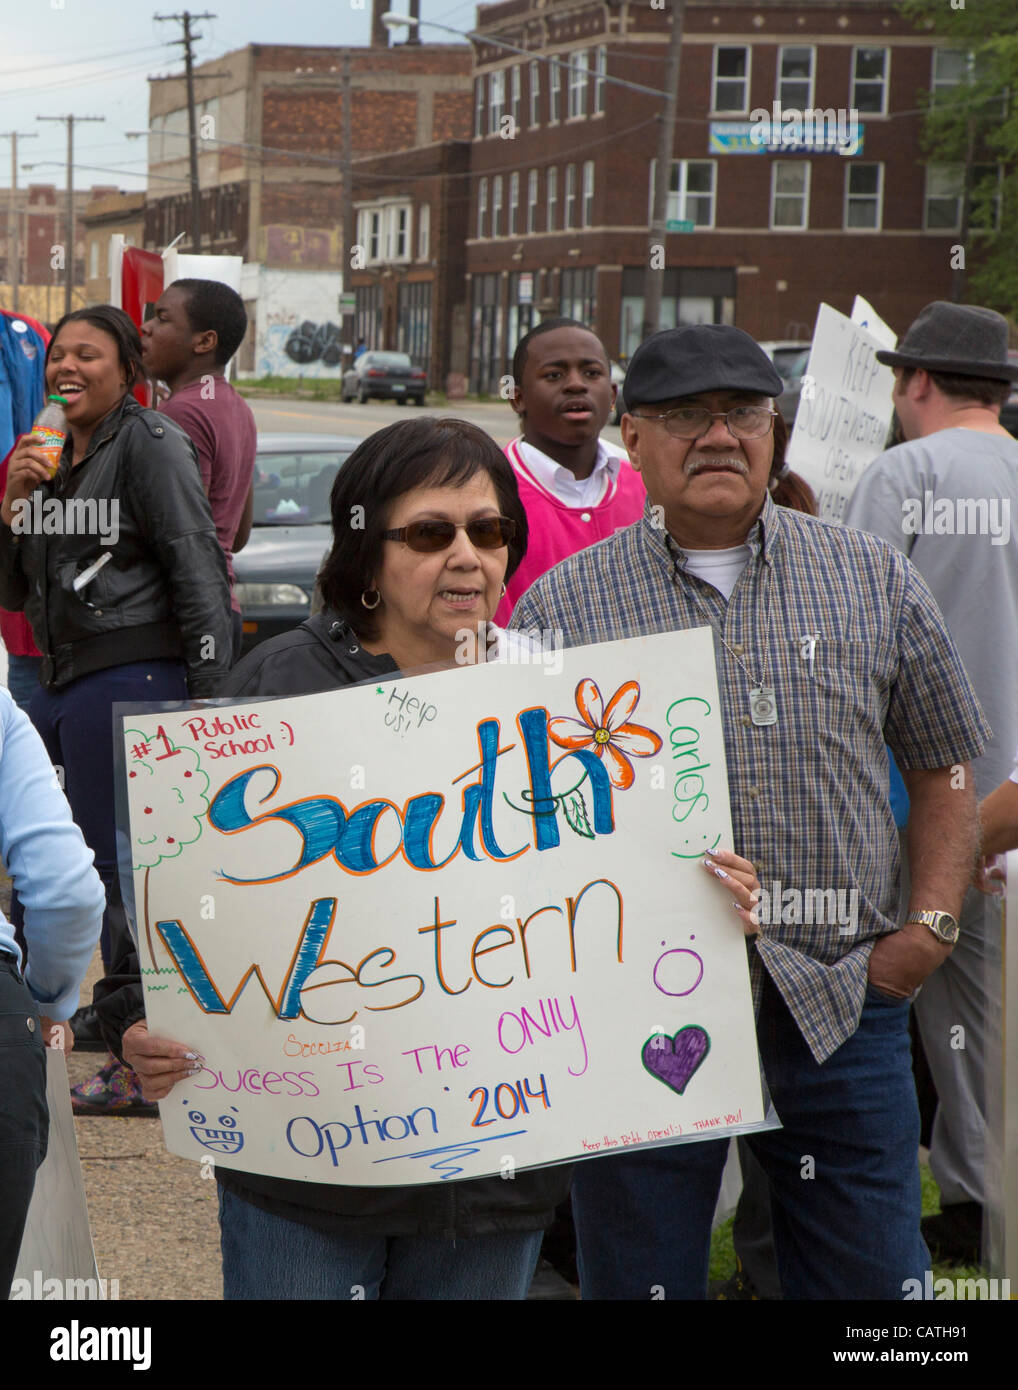 Detroit, Michigan - estudiantes, alumnos, padres y miembros de la comunidad protesta de las escuelas públicas de Detroit' un plan para cerrar Southwestern High School. Foto de stock